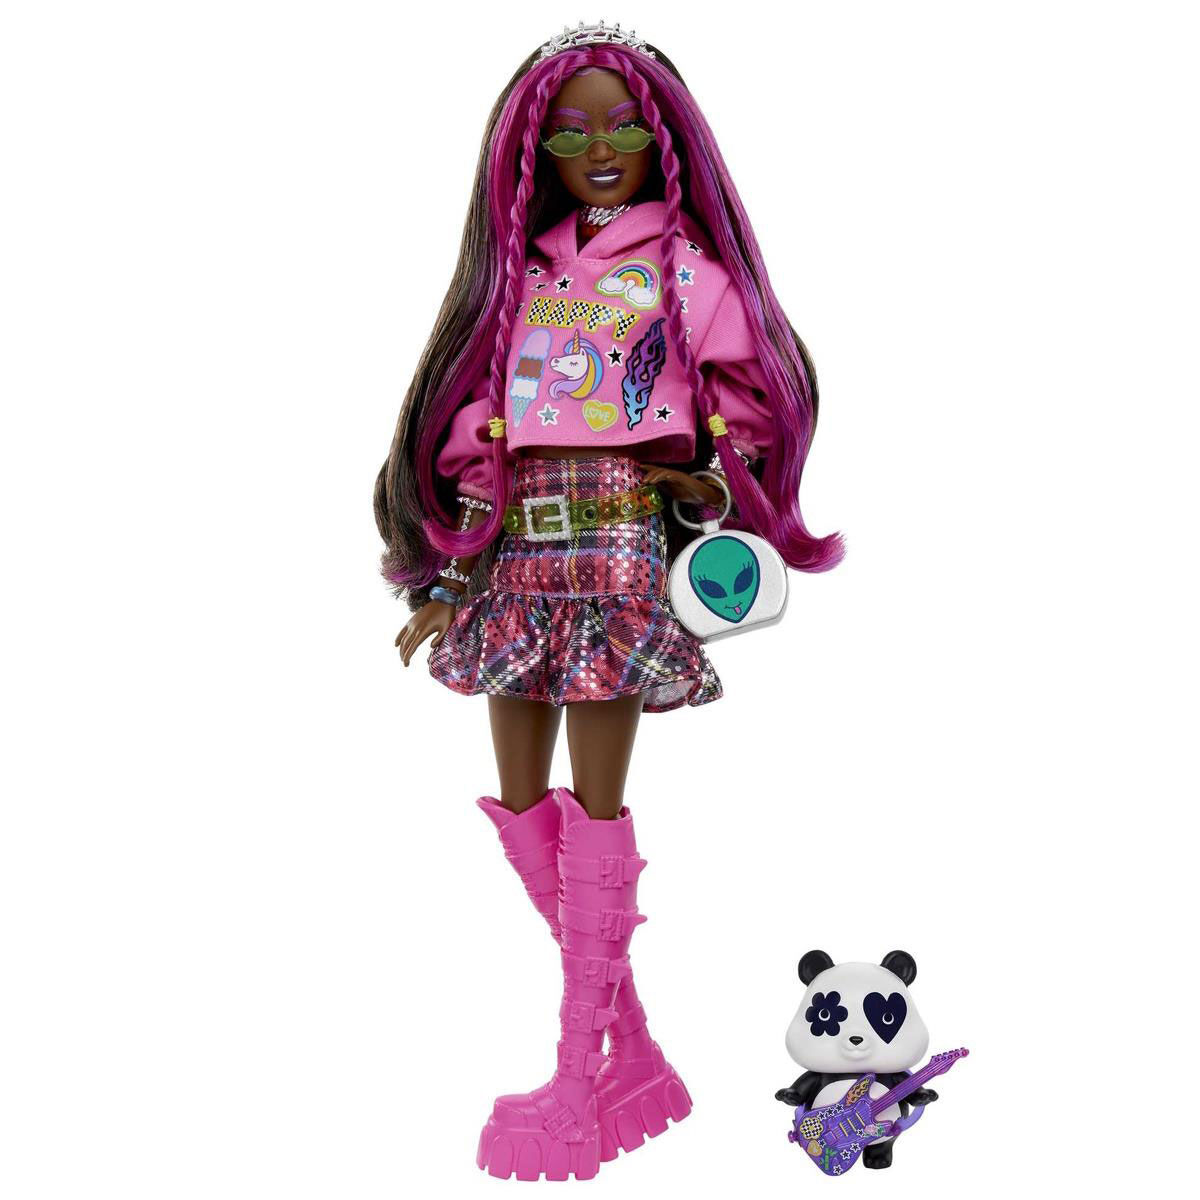 Boneca Barbie - Extra - Barbie Com Saia e Bolsa Roxa - Mattel